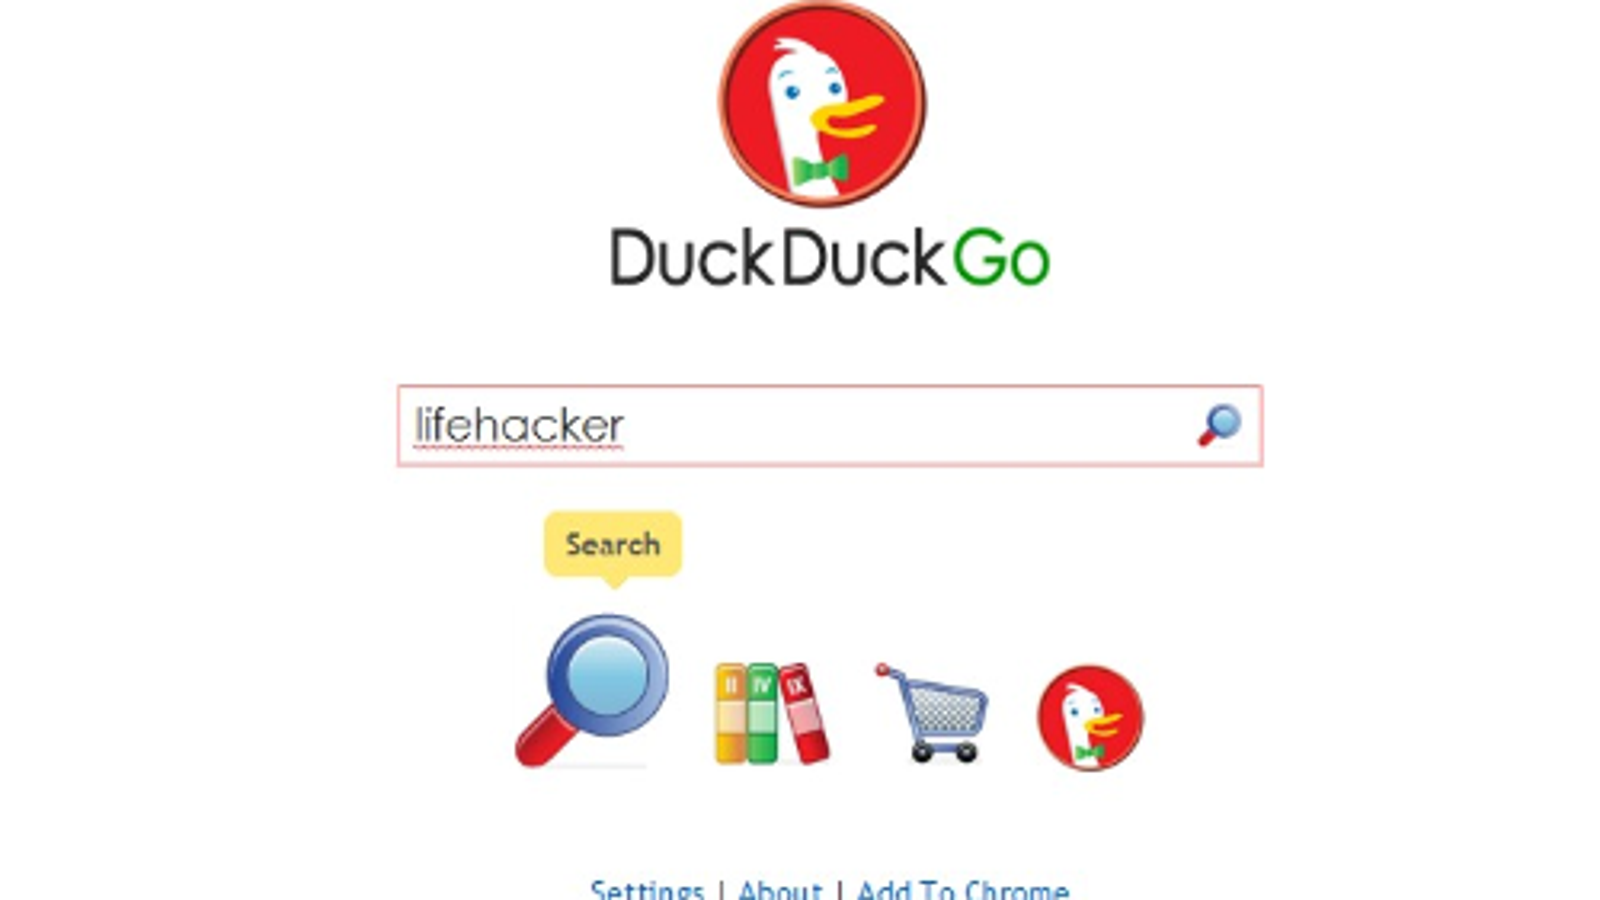 duckduckgo desktop browser download